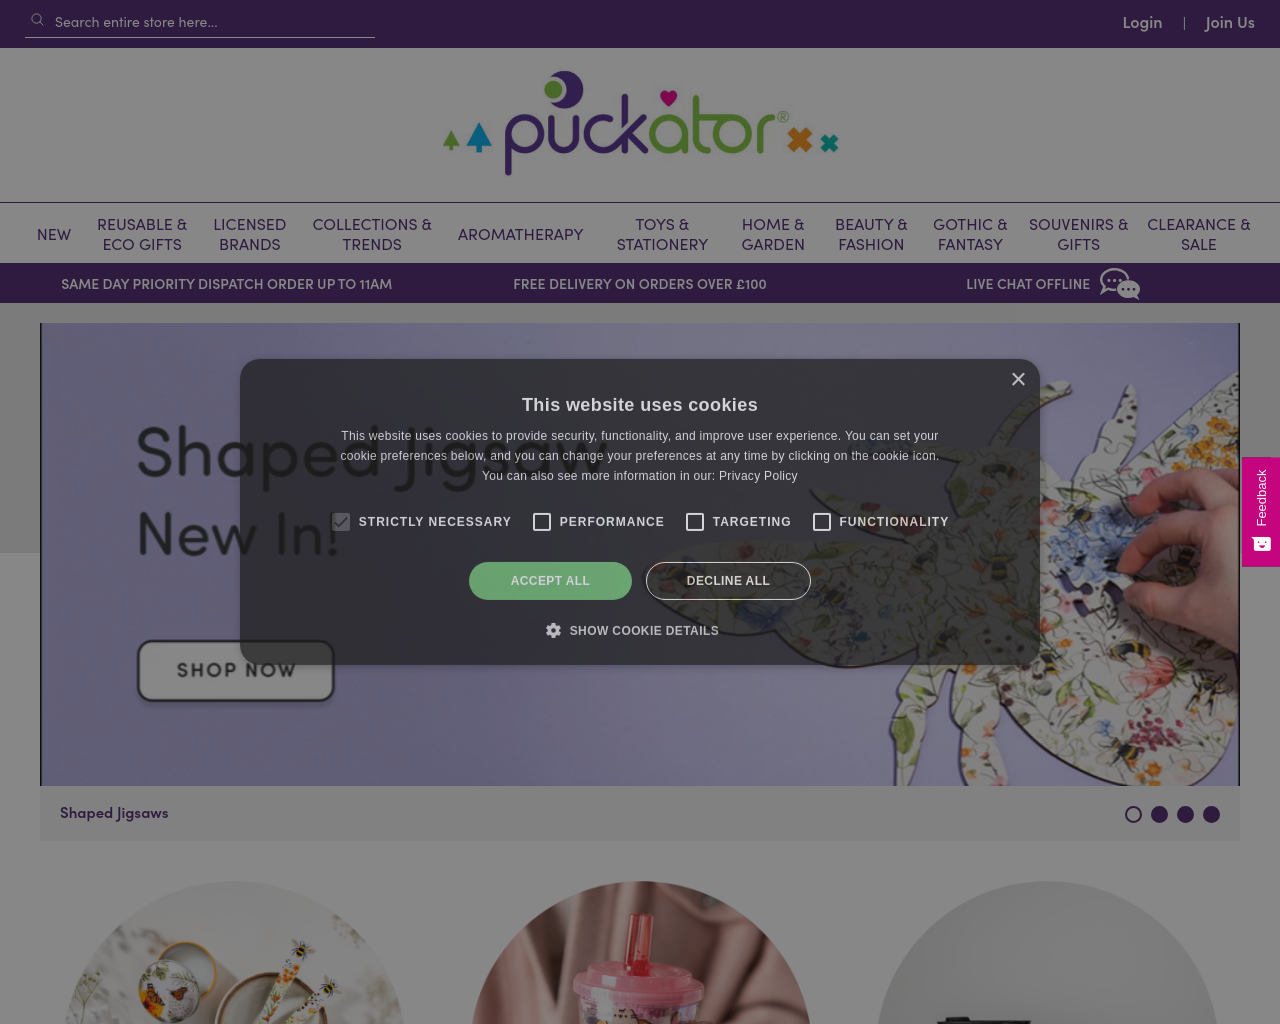 puckator.co.uk